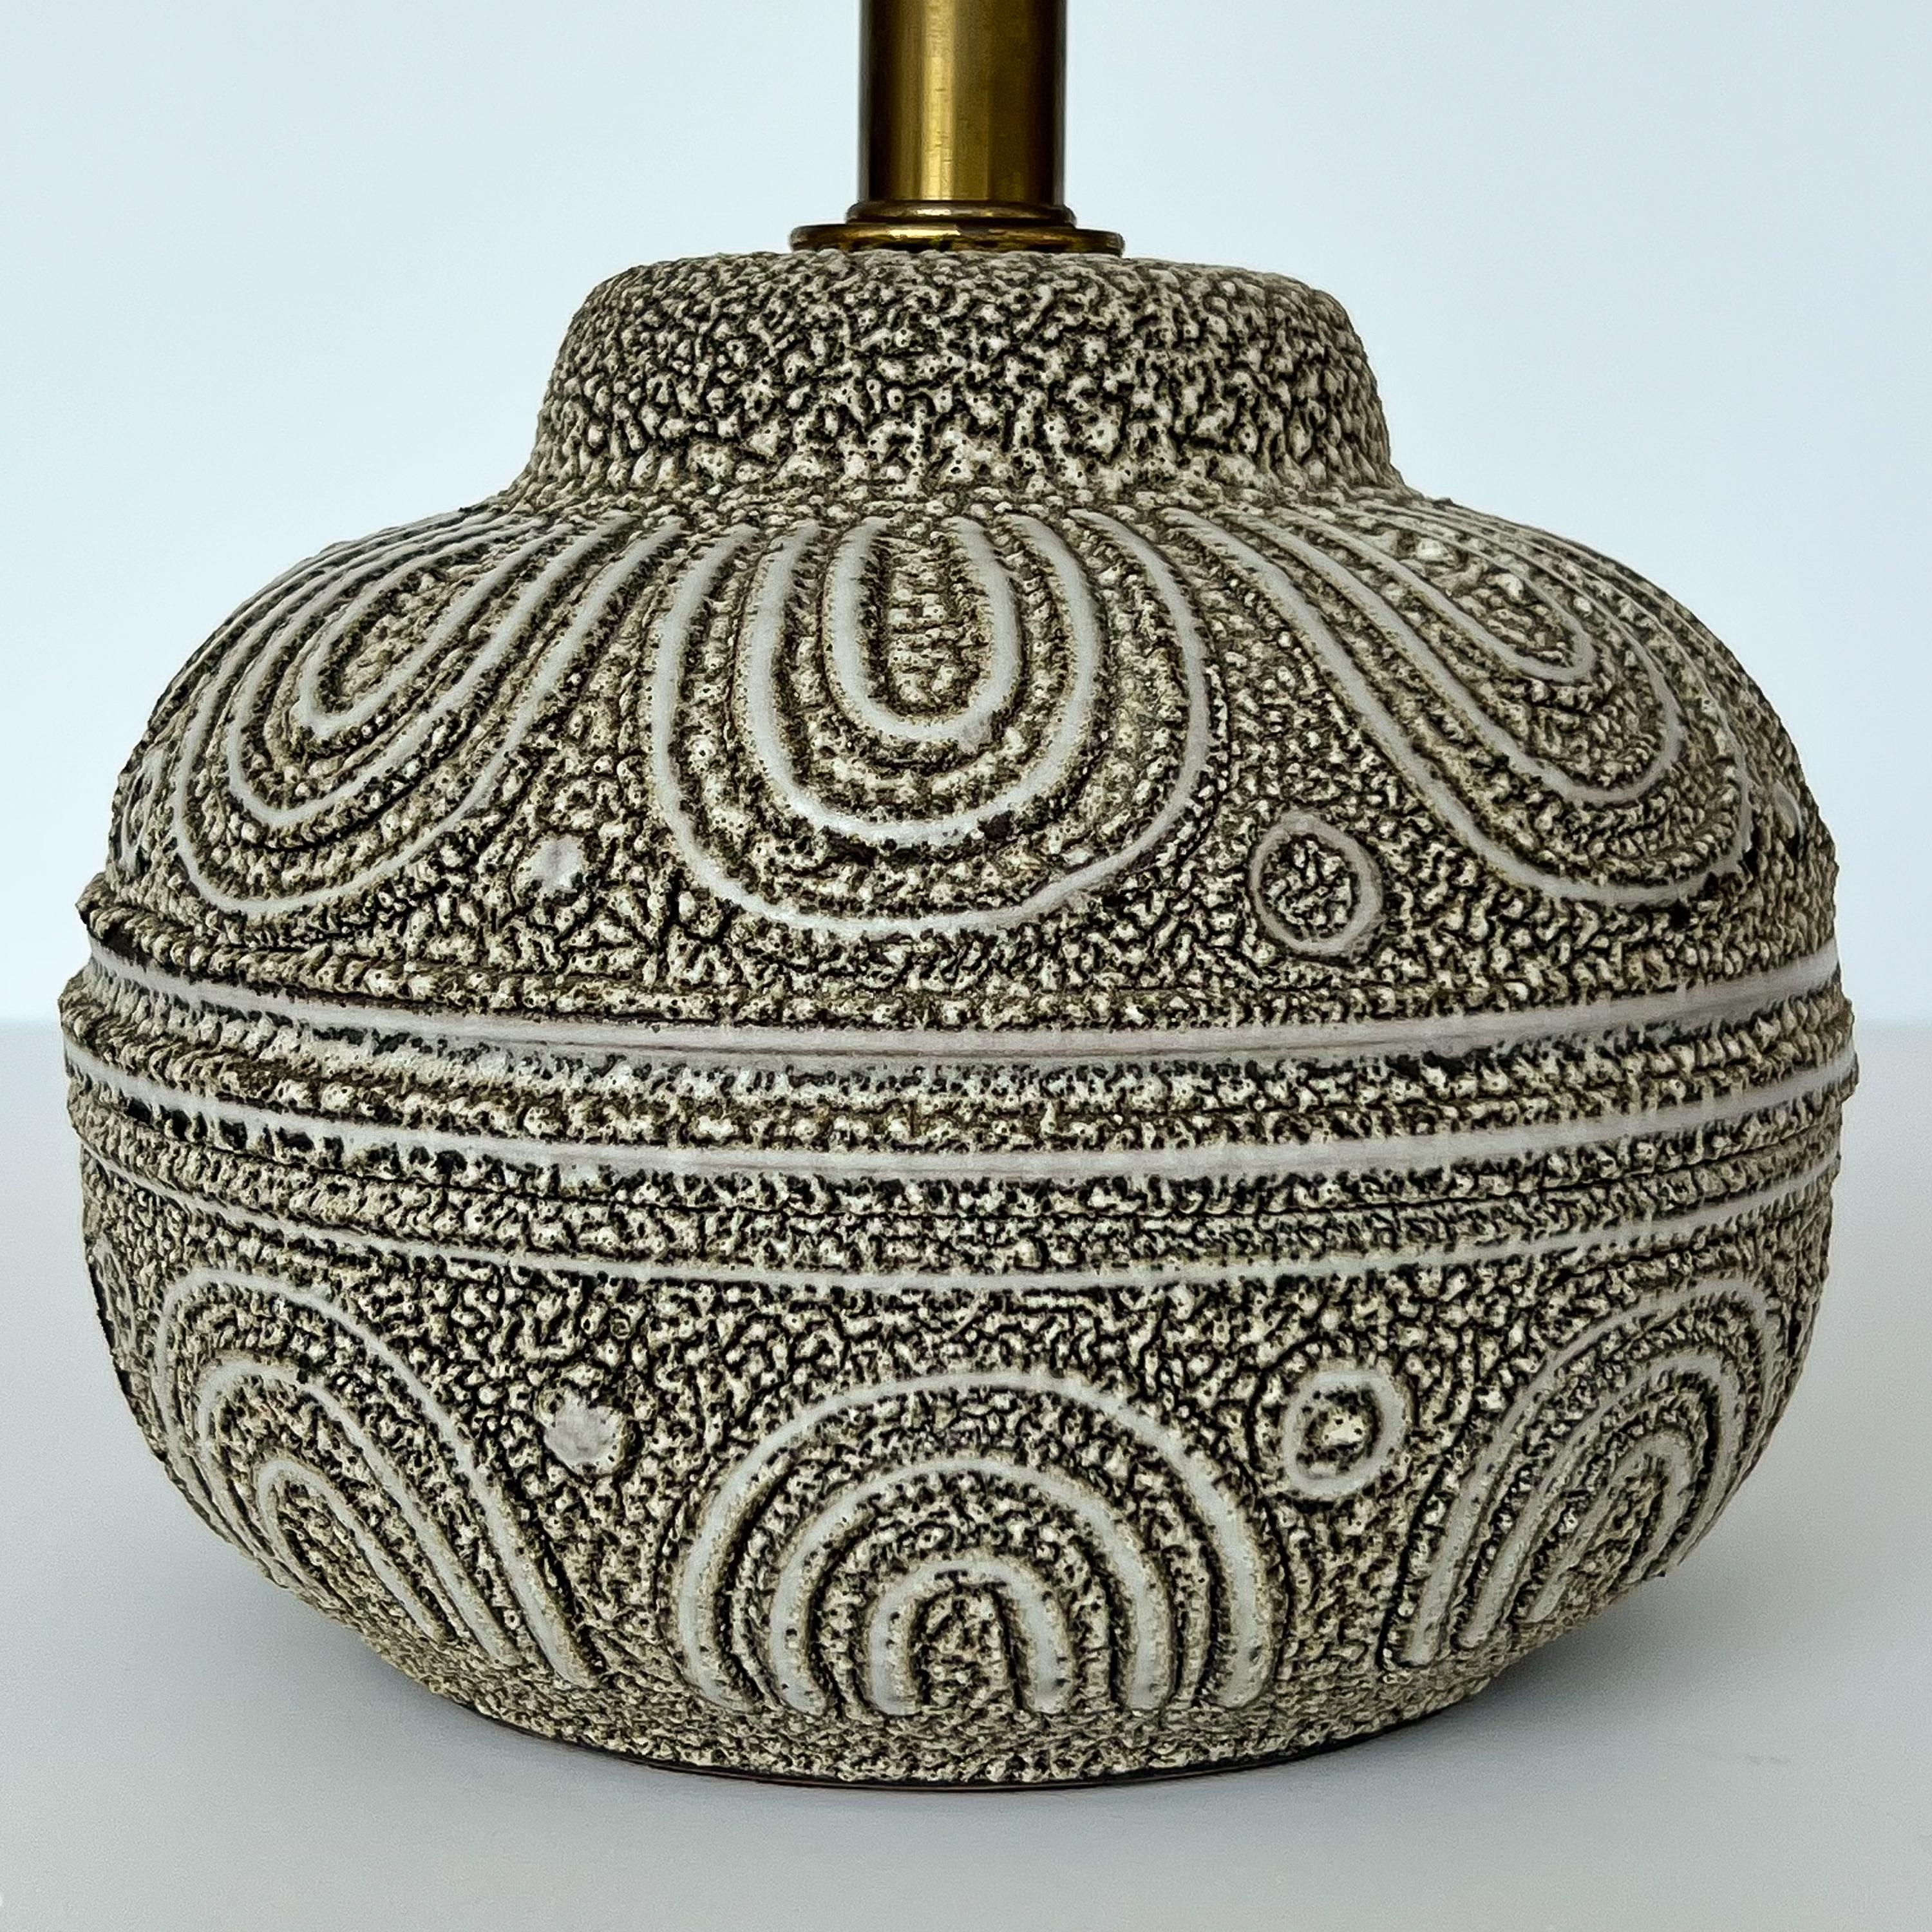 American Lee Rosen Design Technics Textured Ceramic Table Lamp